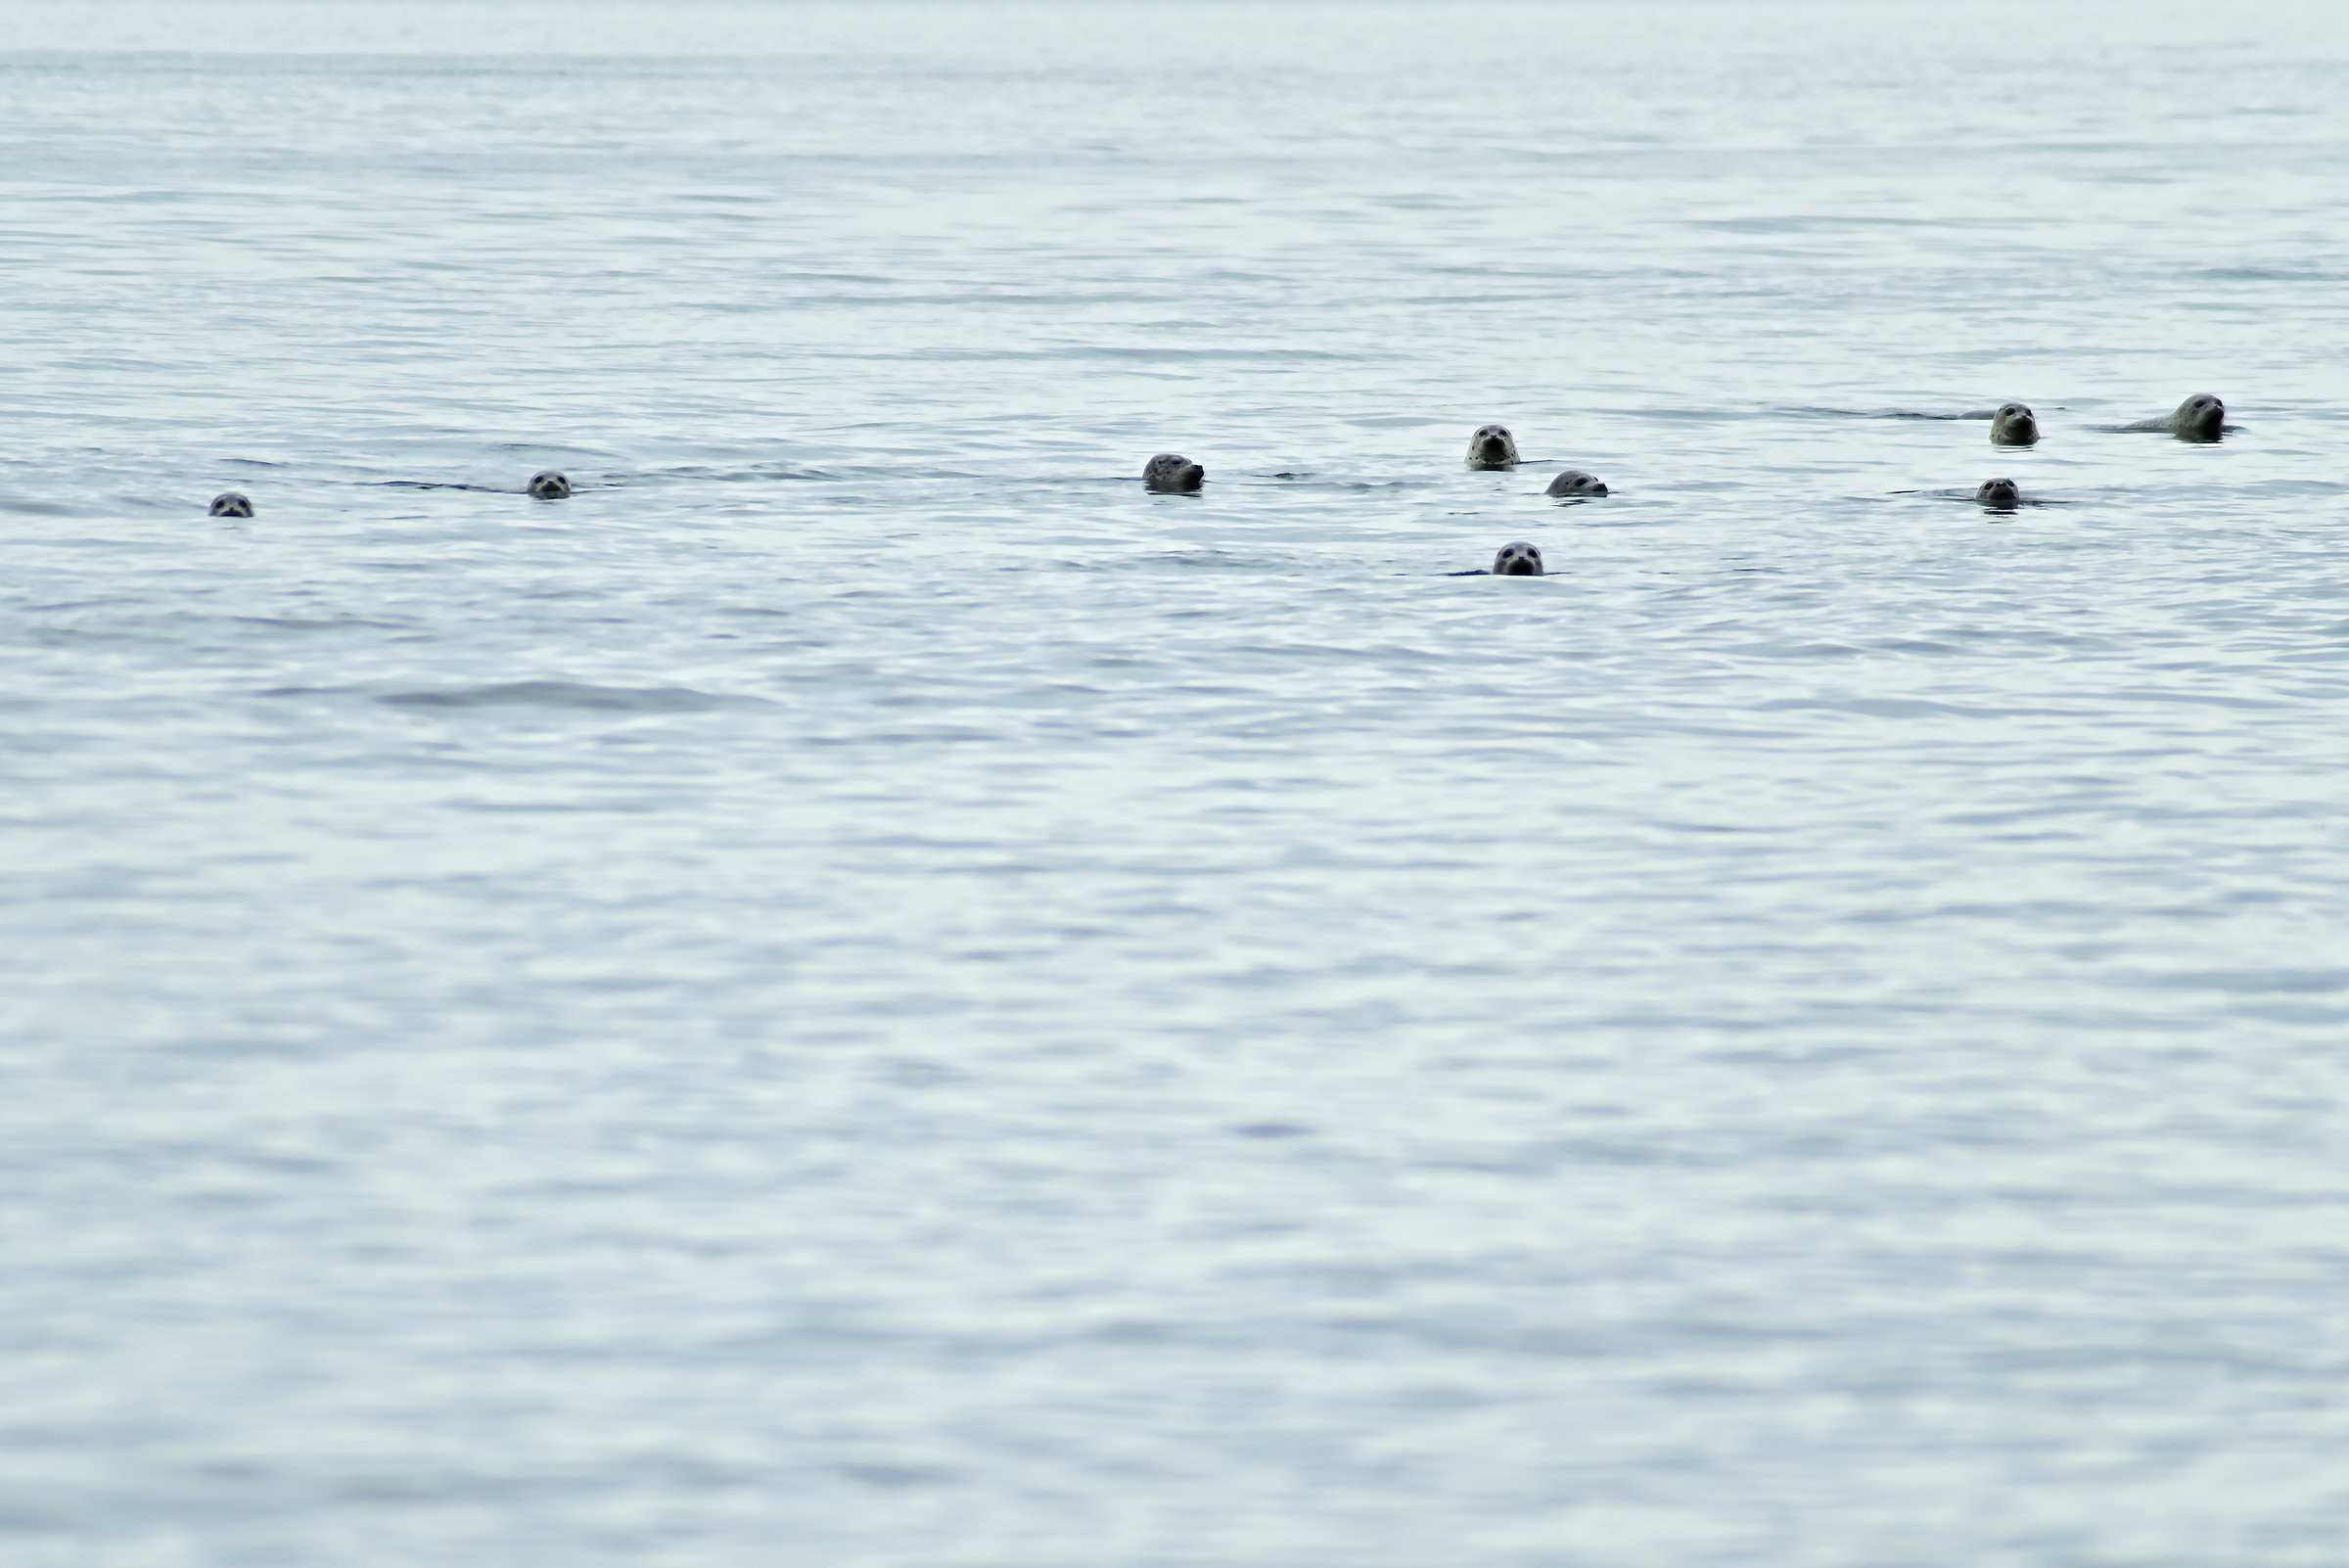 Нерпы в море недалеко от берега в заливе Анива на Сахалине.